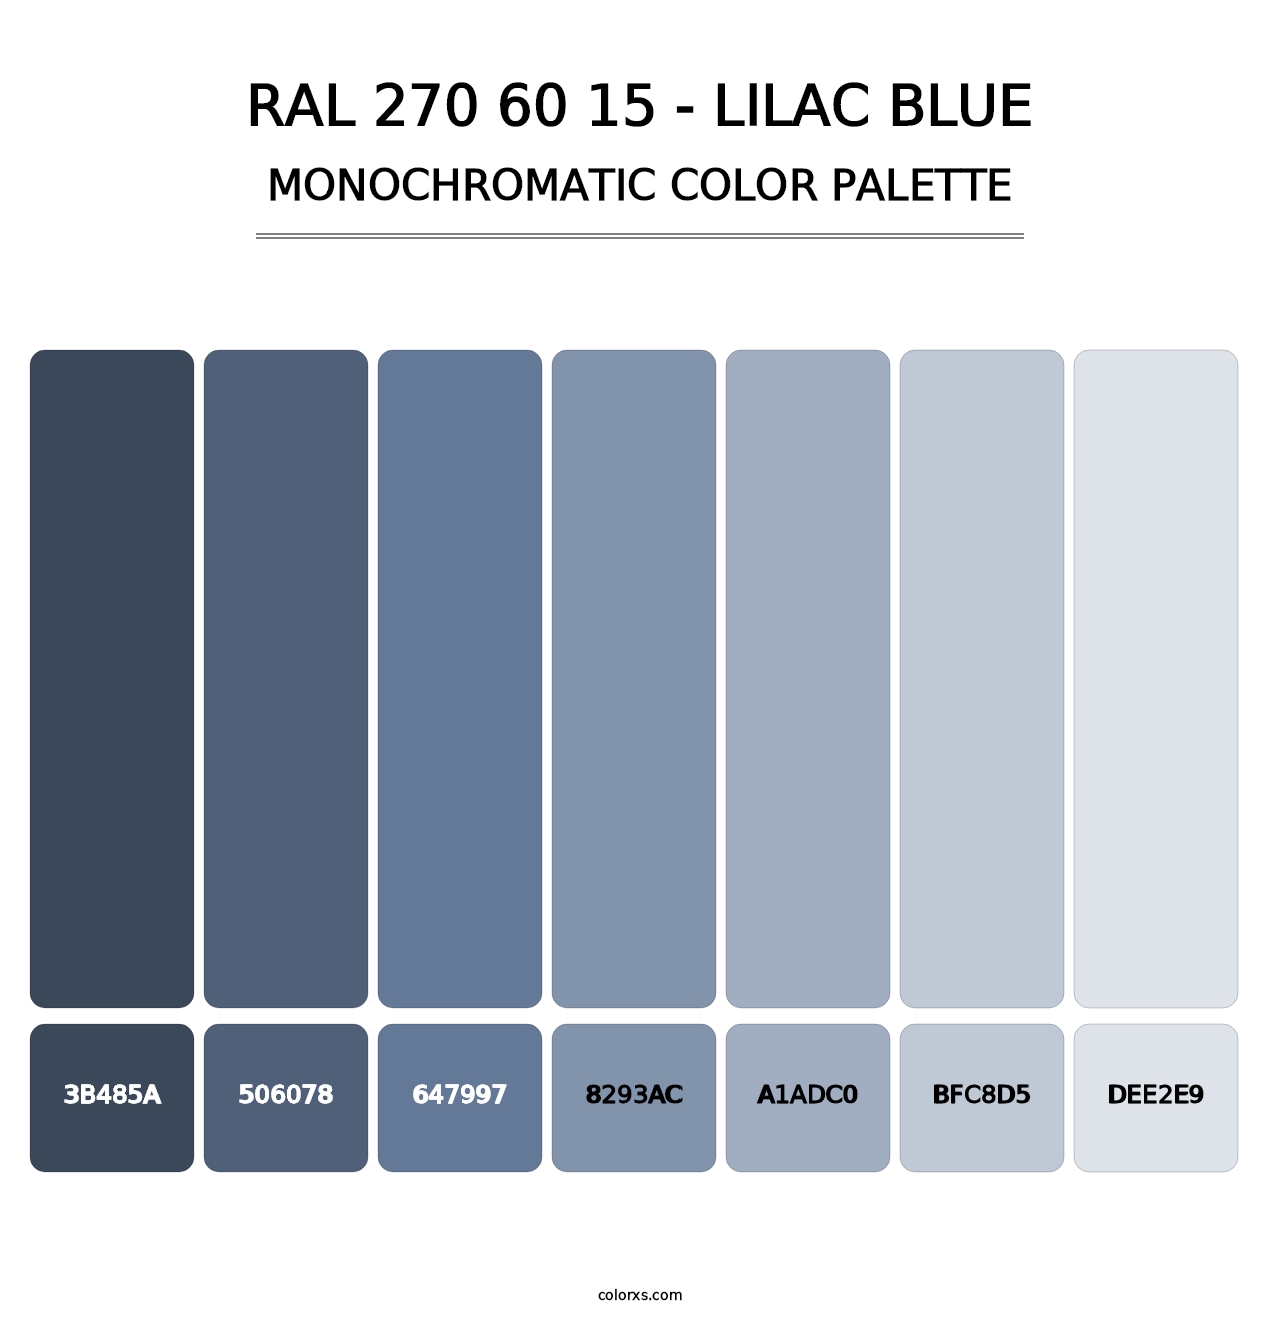 RAL 270 60 15 - Lilac Blue - Monochromatic Color Palette